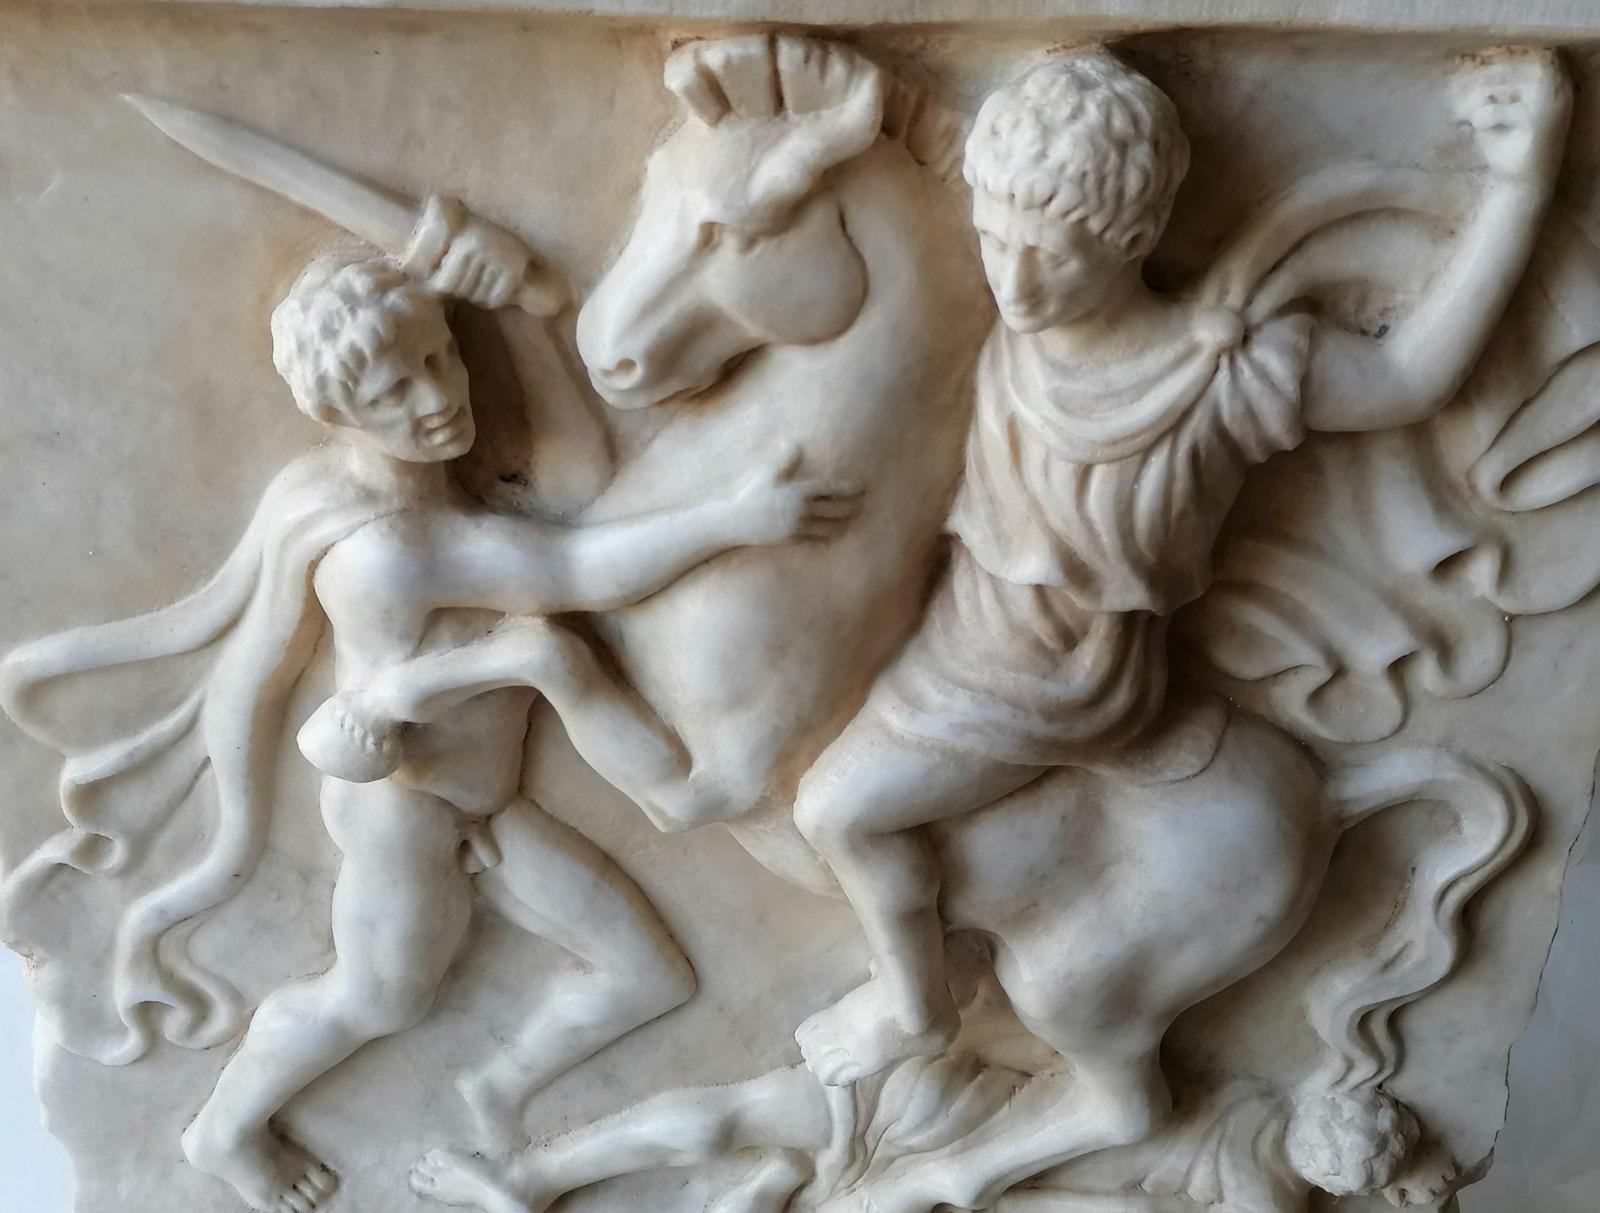 Haut-relief représentant une bataille dans le style classique. 
sculpté sur du marbre blanc de Carrare 
dimensions 46 h x 45 x 10 cm,
 poids 35,5 kg 
Crâne - 